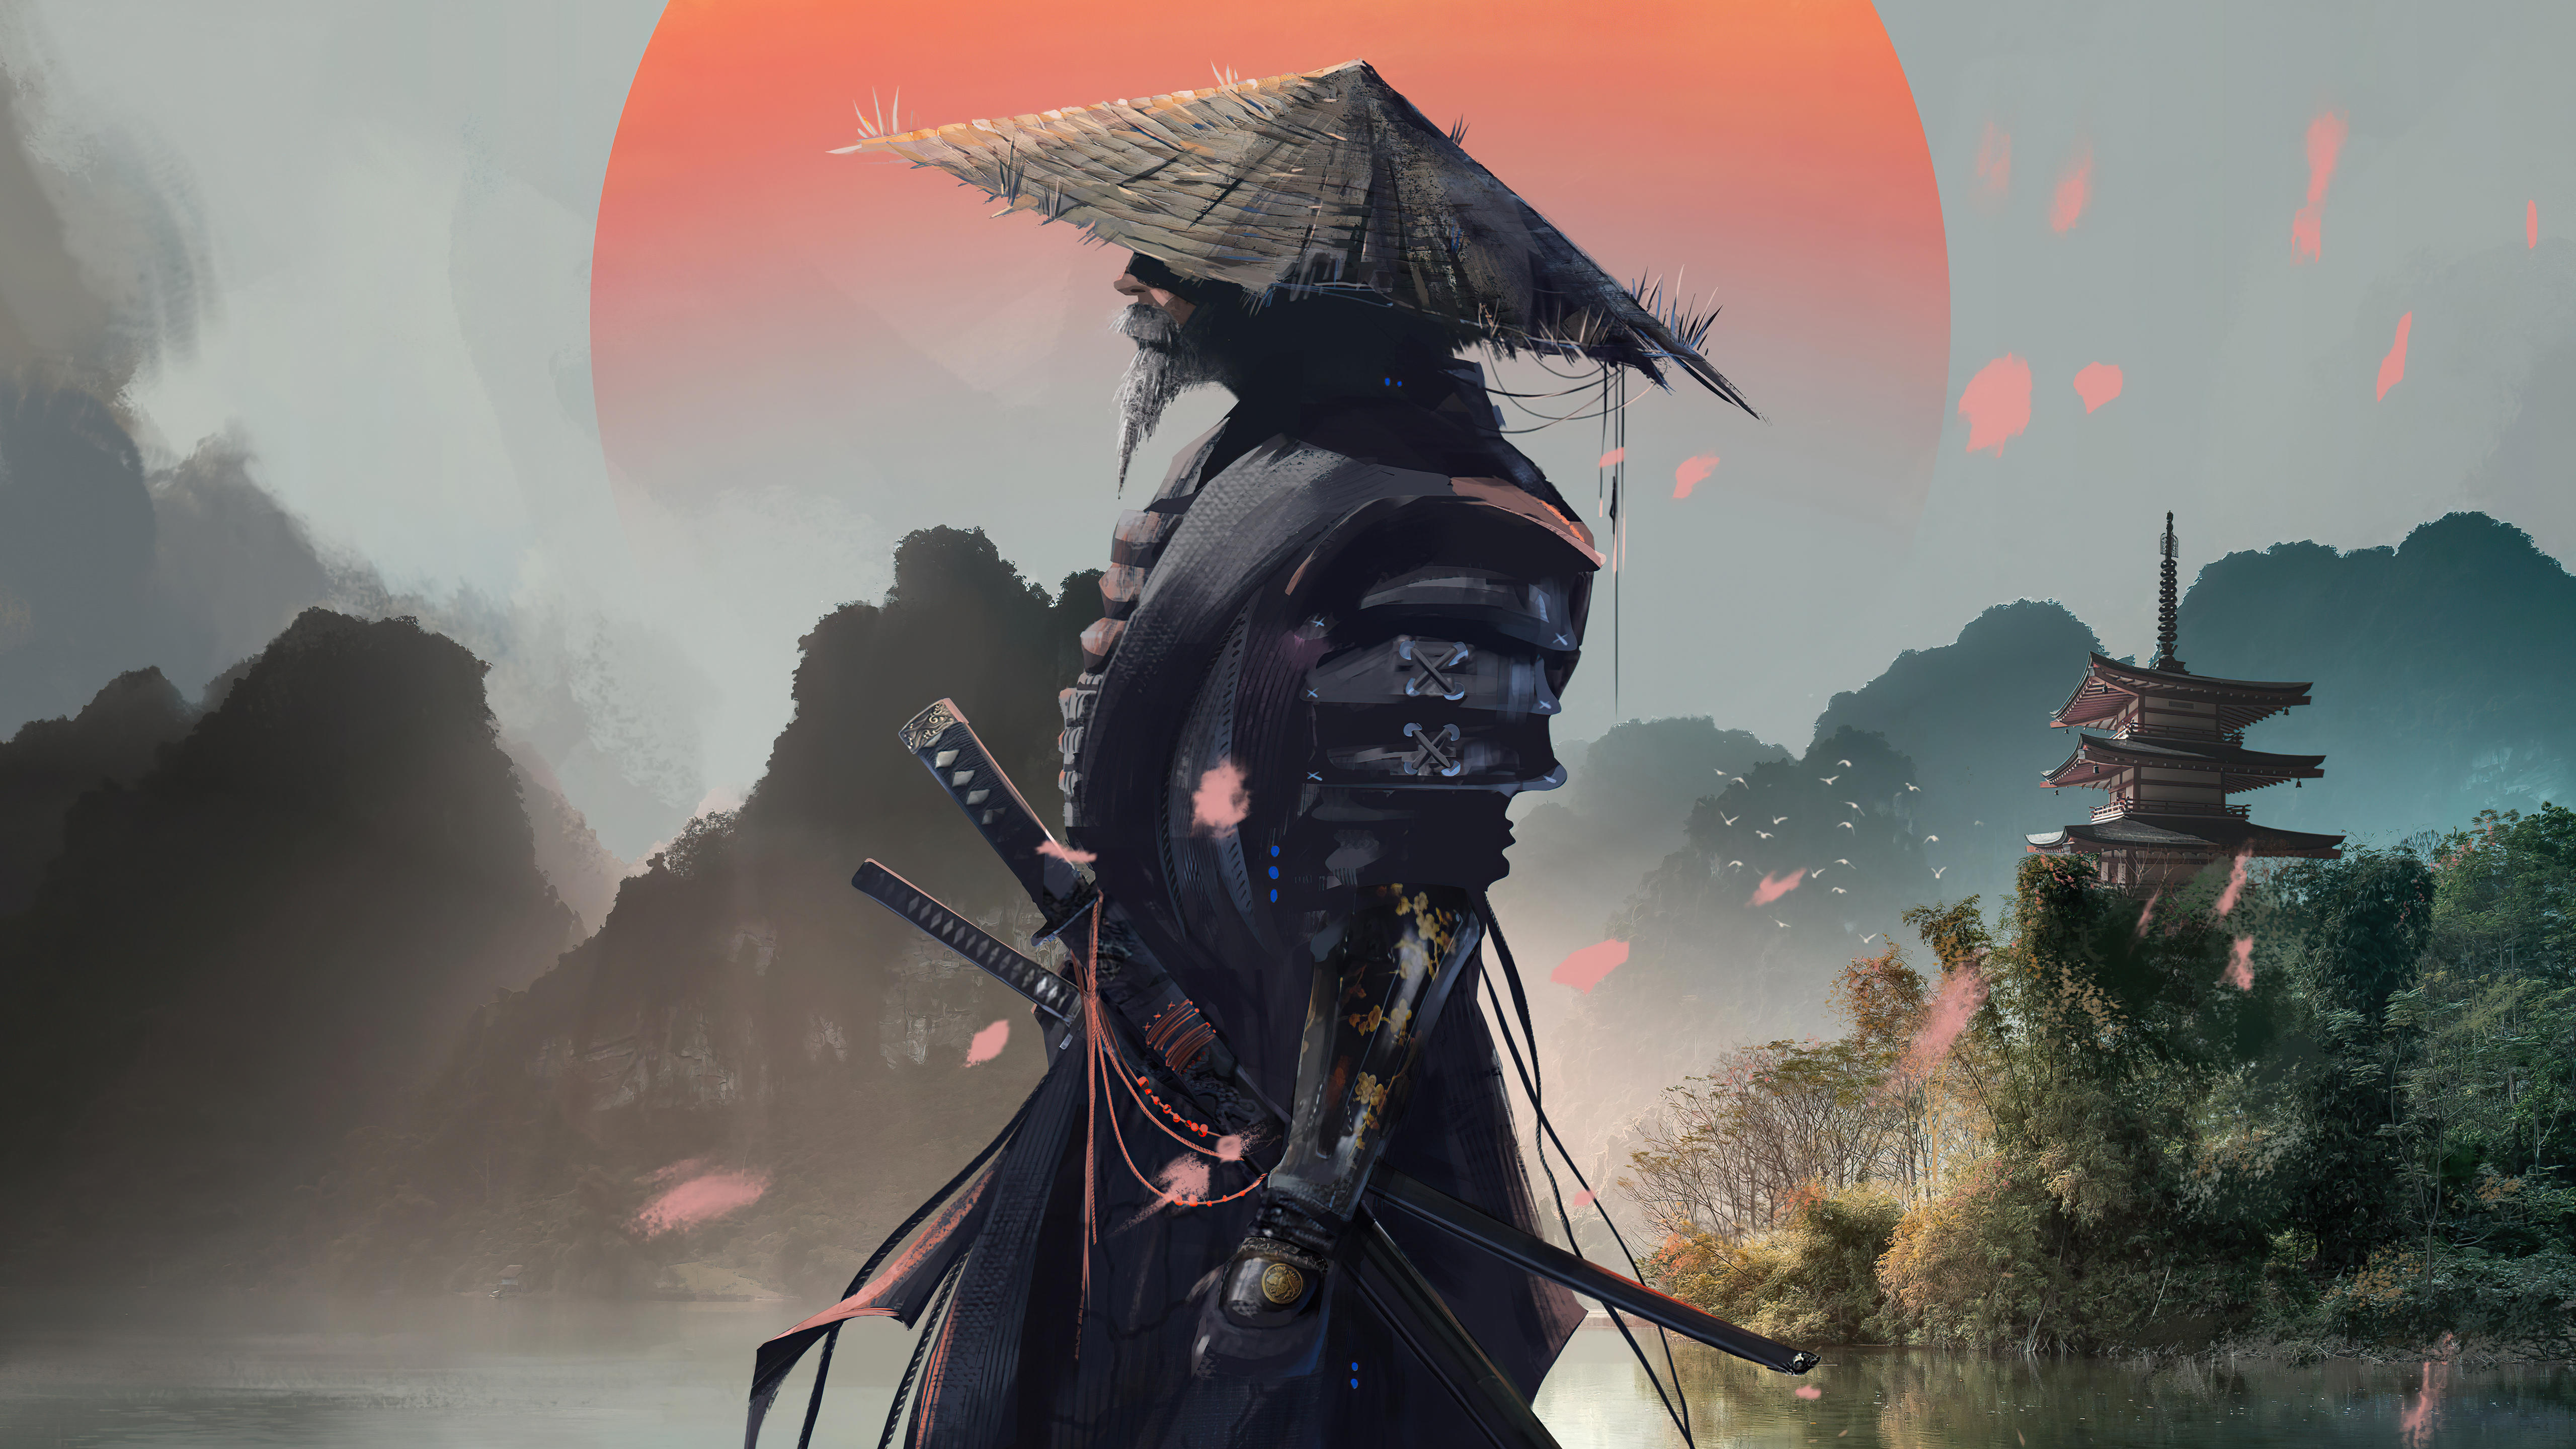 General 5120x2880 digital art warrior samurai landscape Xavier Cuenca fantasy men fantasy art hat